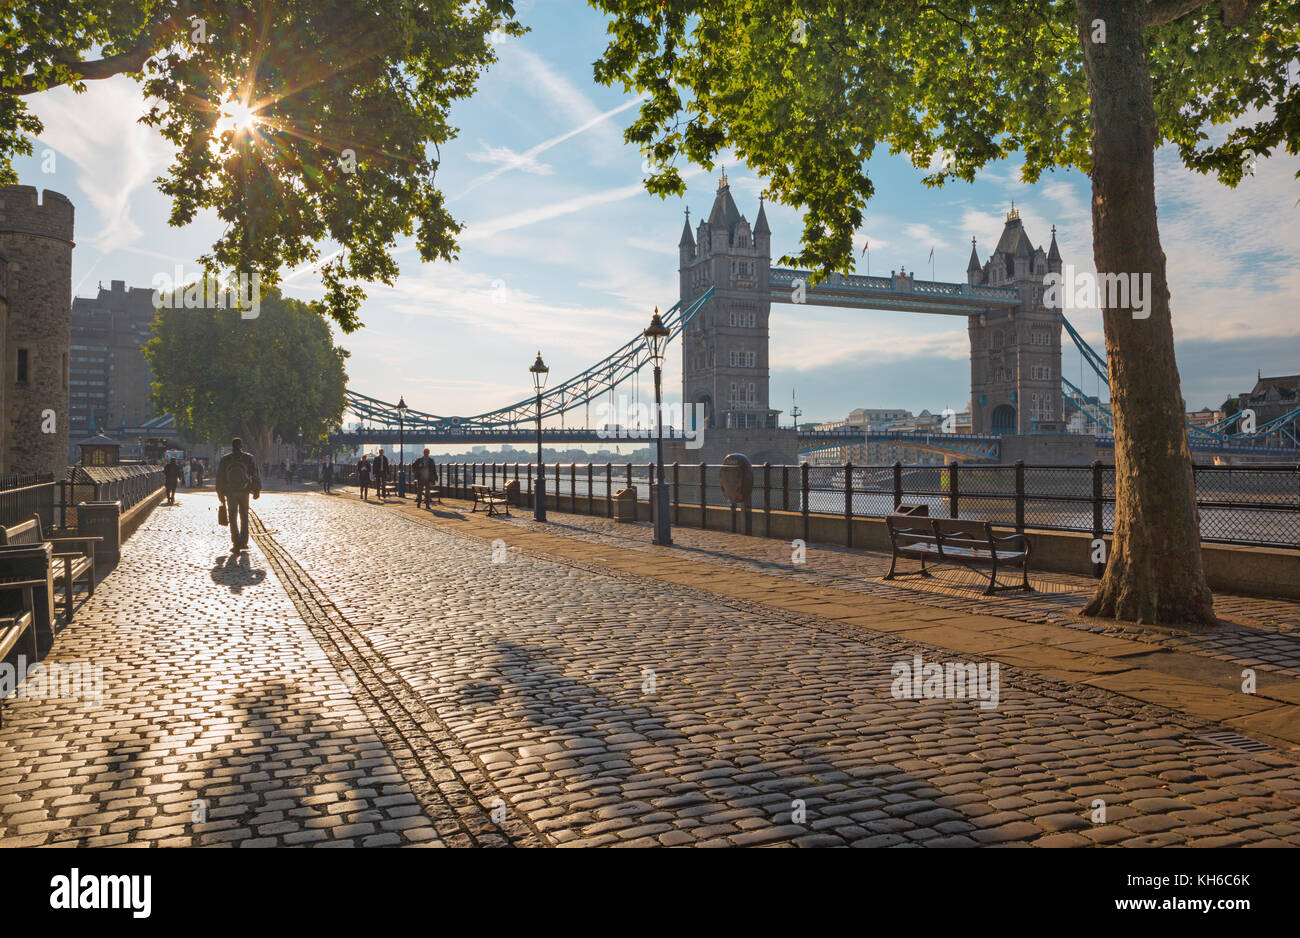 Londra, Gran Bretagna - 20 settembre 2017: il lungomare e il Tower bridge nella luce del mattino. Foto Stock